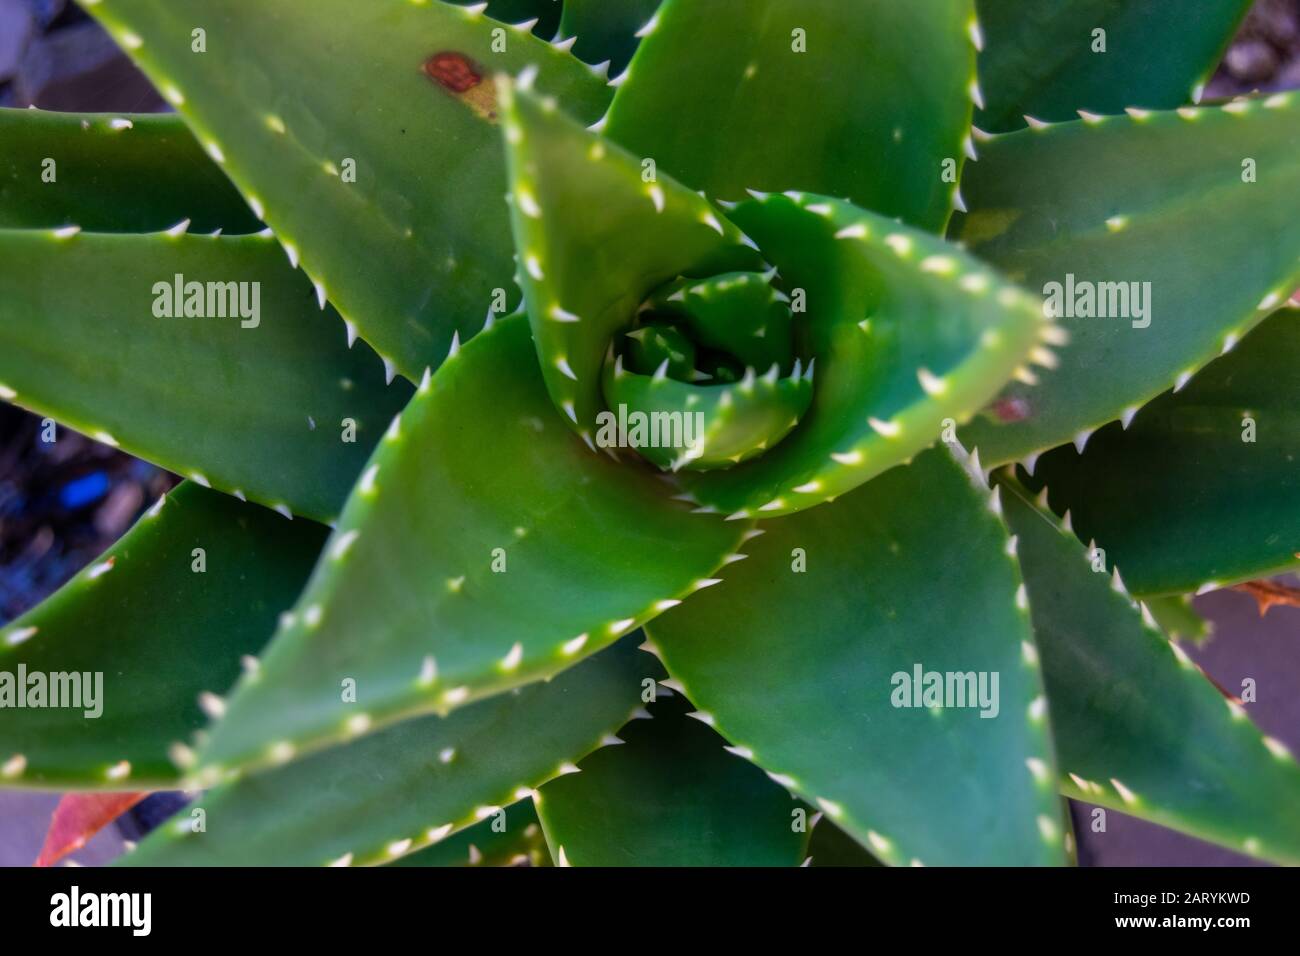 Aloe brevifolia outdoor garden plants and textures Stock Photo